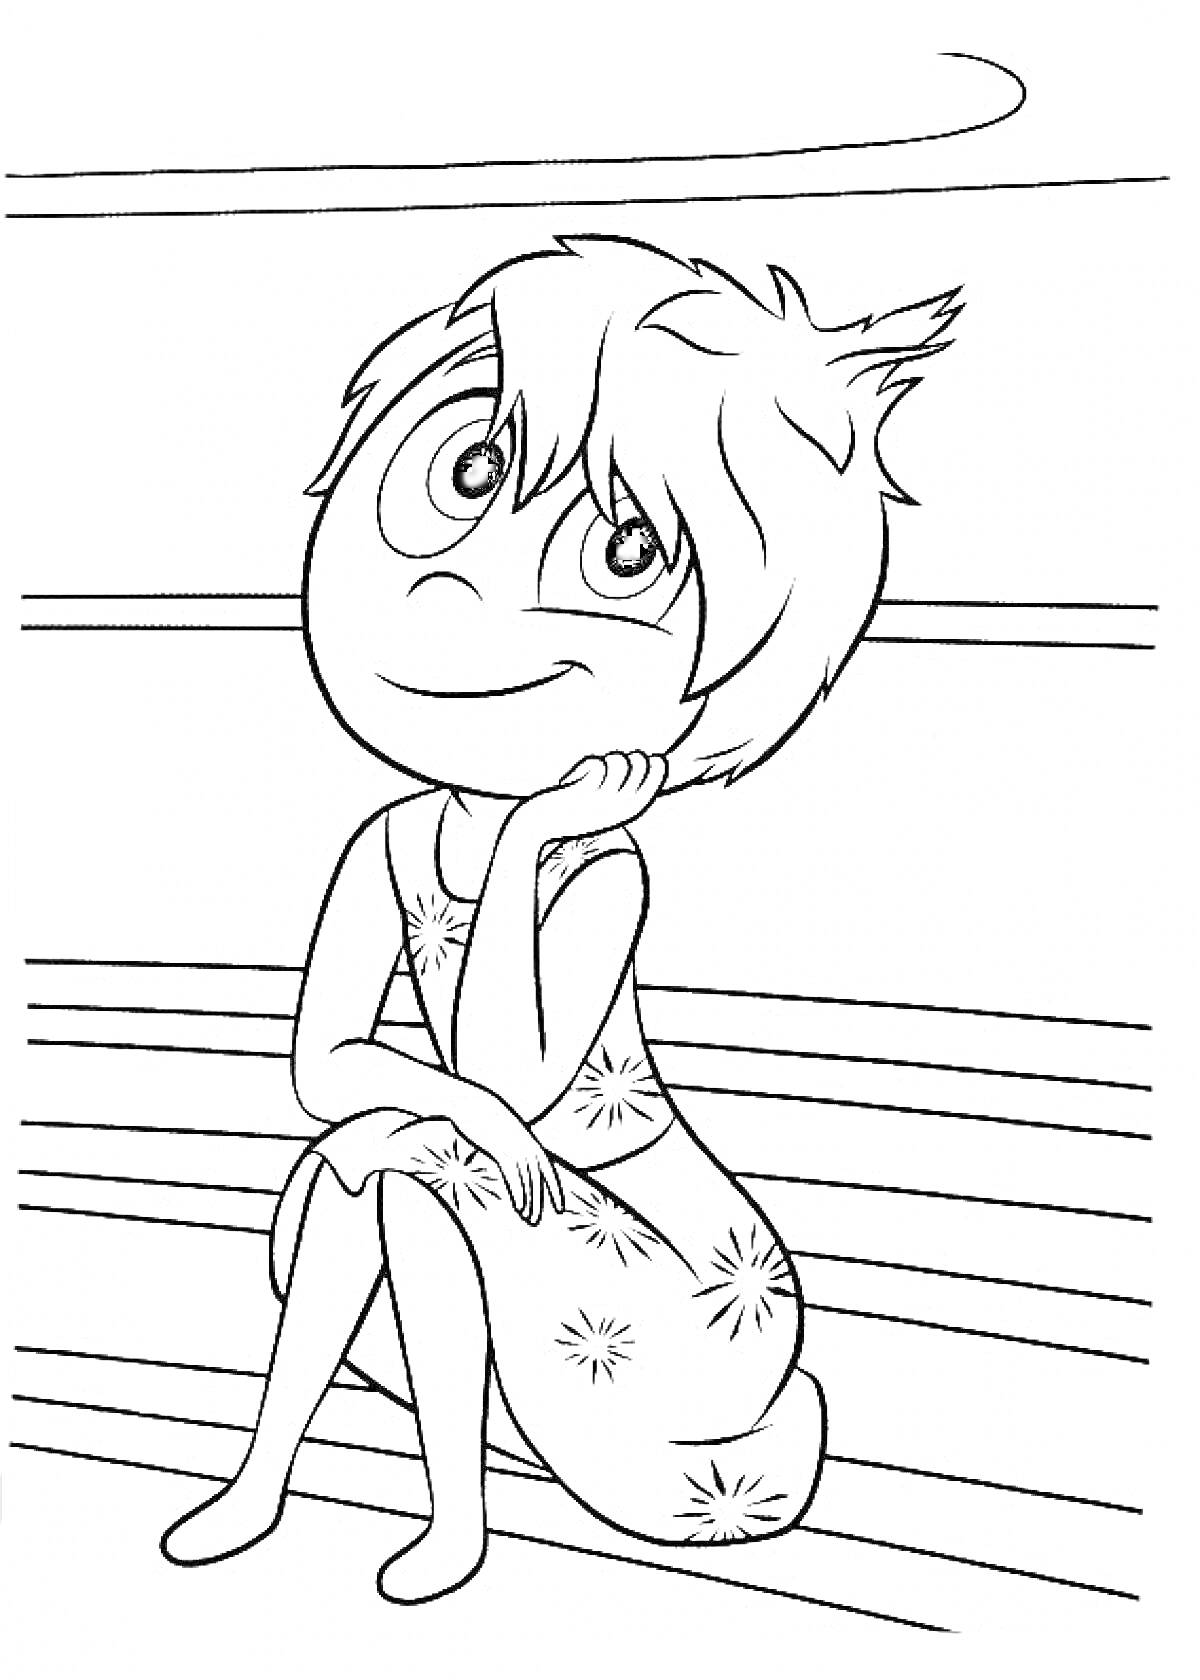 Девочка с короткими волосами и платьем со звездами сидит на скамейке, сцена из мультфильма 